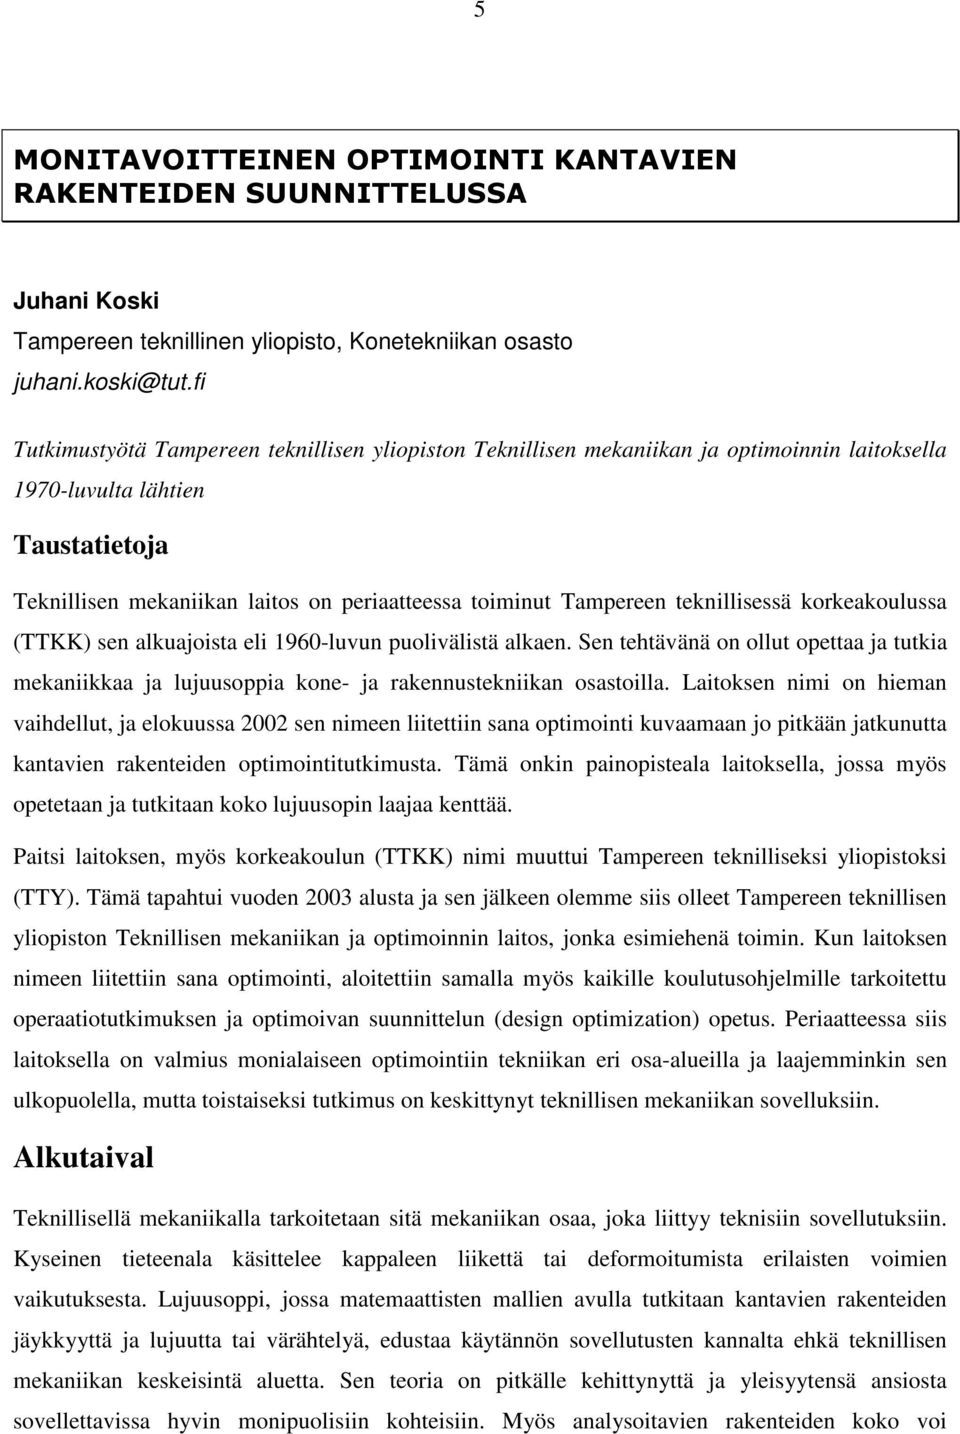 Tampereen teknillisessä korkeakoulussa (TTKK) sen alkuajoista eli 1960-luvun puolivälistä alkaen.